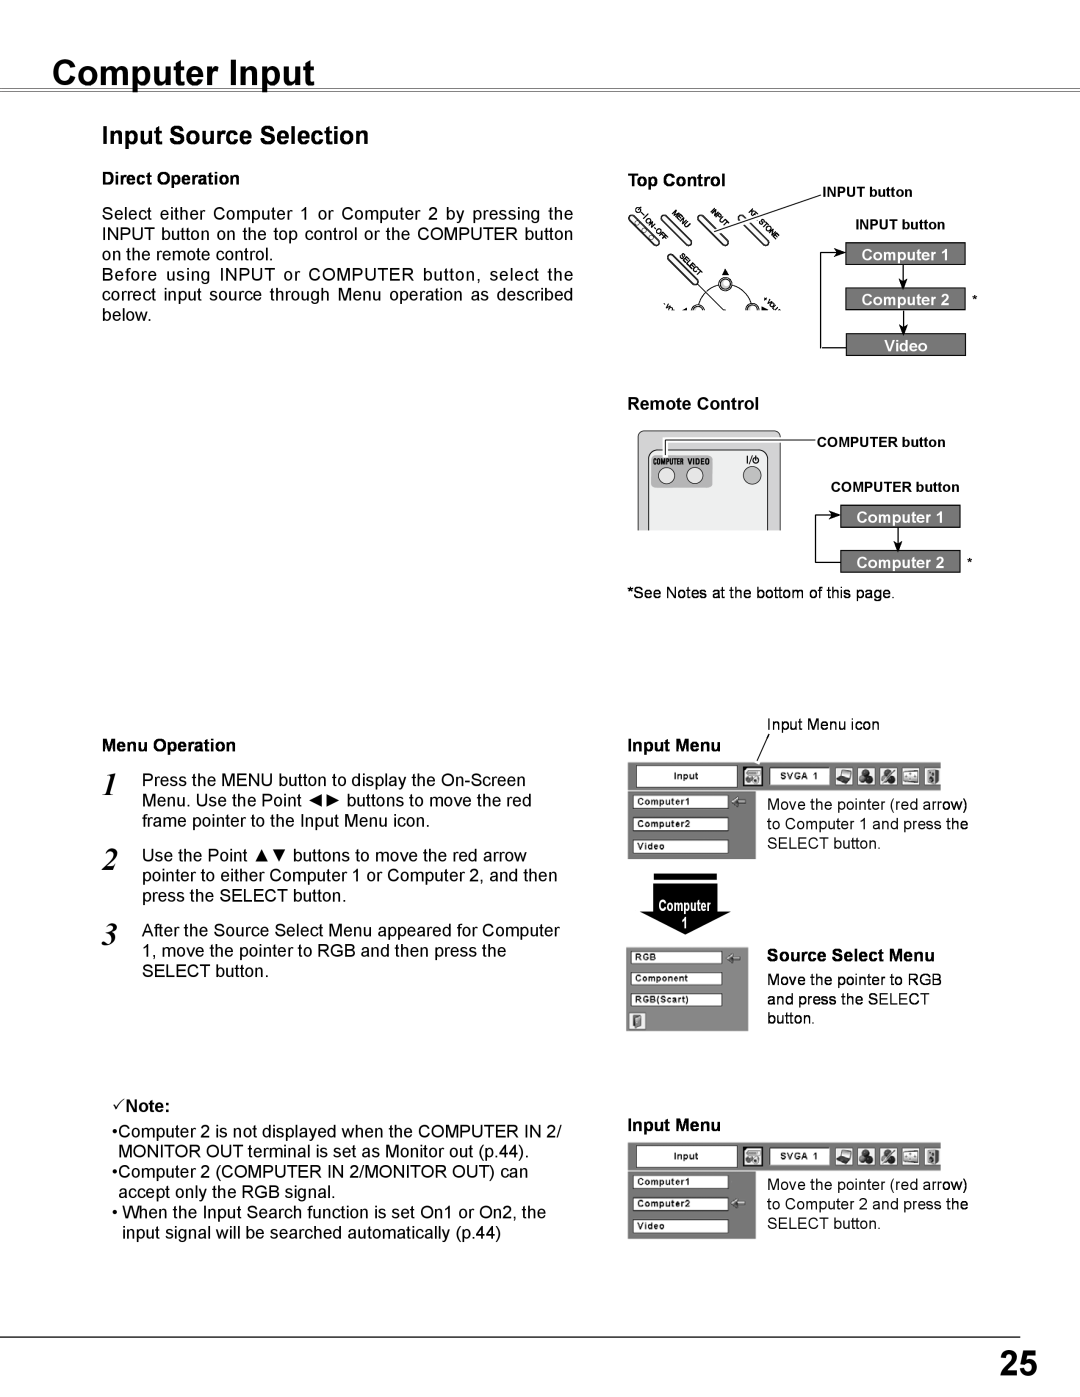 Sanyo PLC-WXE46 Computer Input, Input Source Selection, Direct Operation, Menu Operation, Note, Top Control, Input Menu 